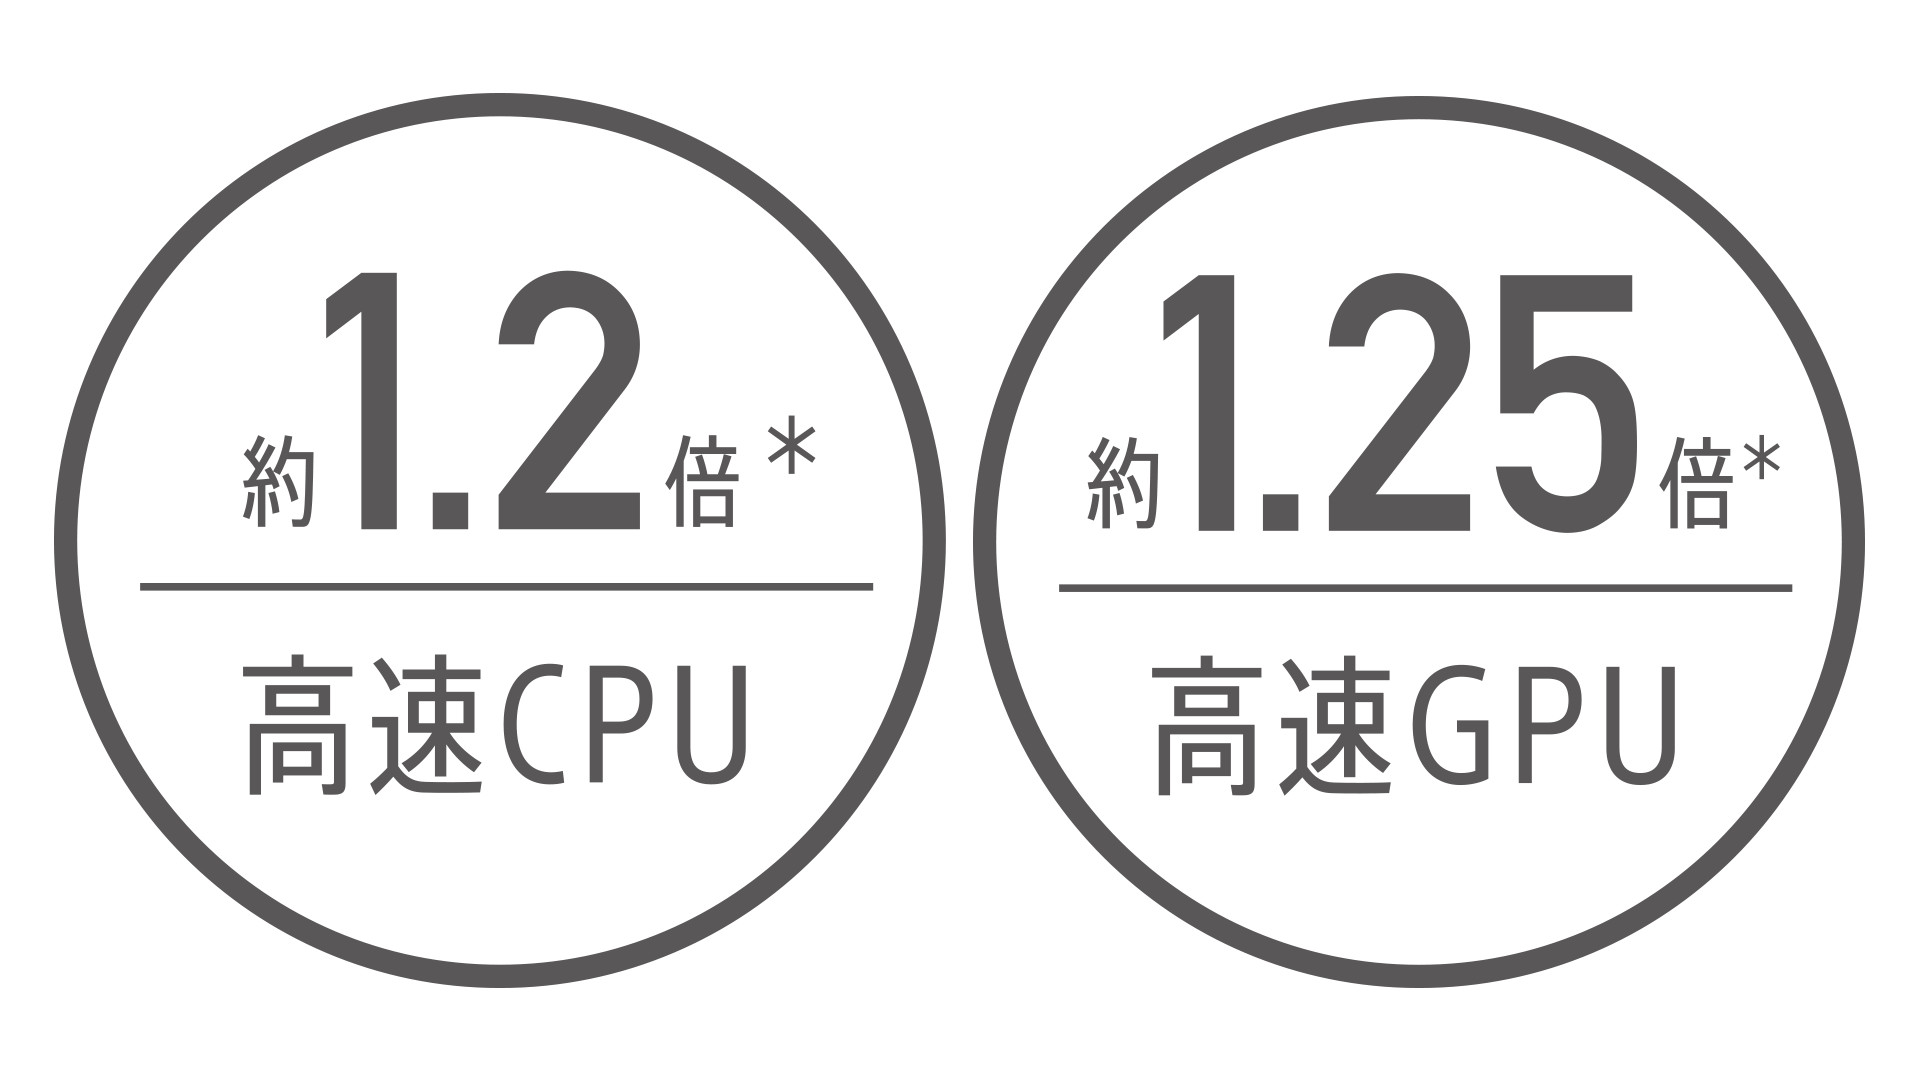 高速CPU/高速GPU